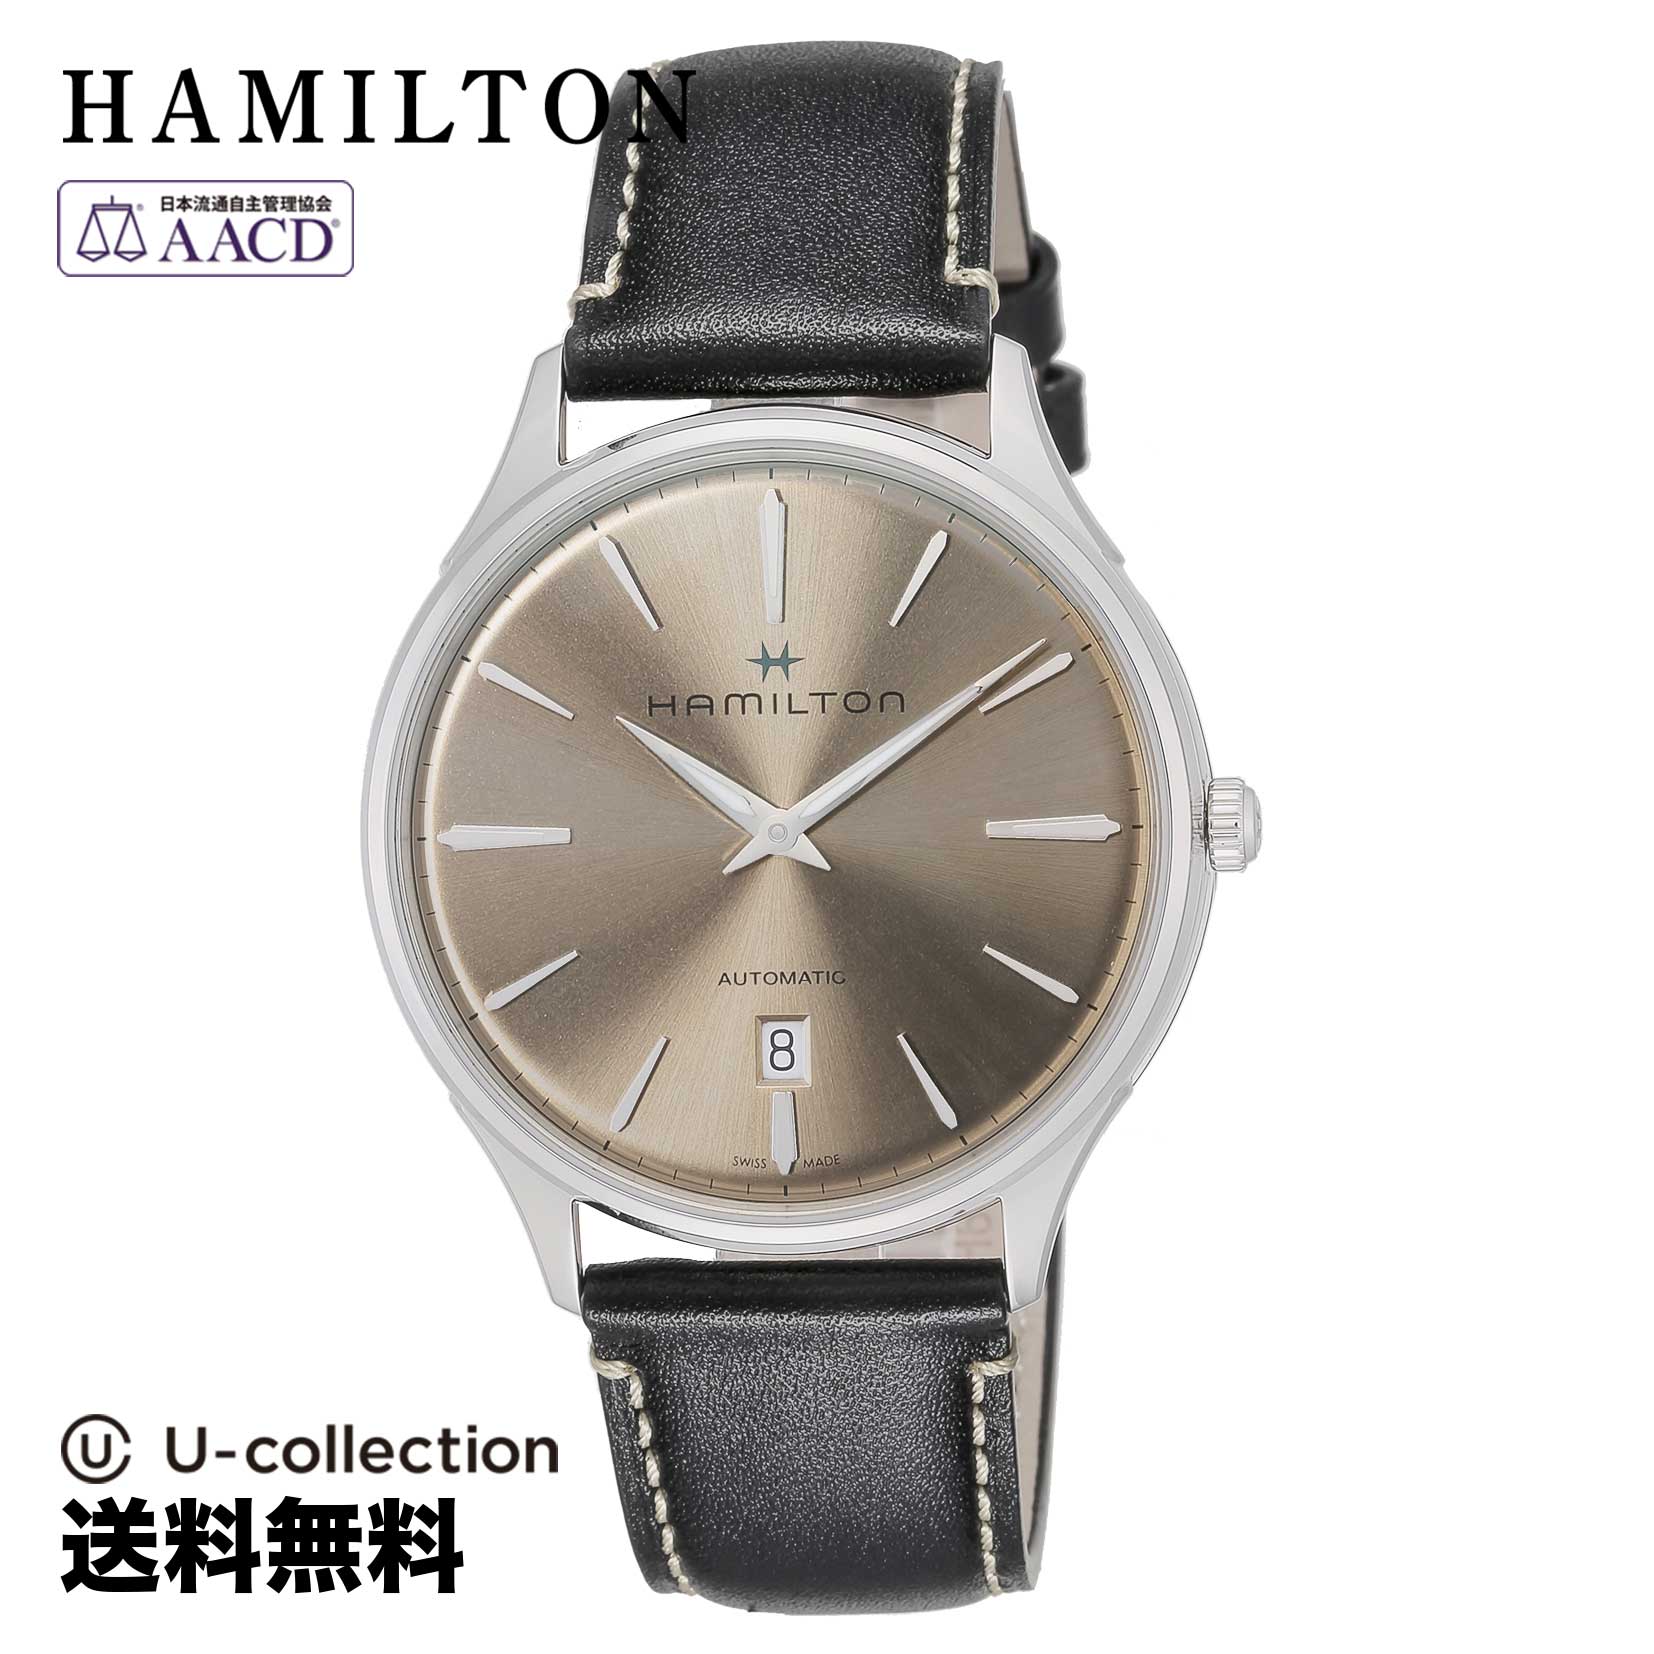 ハミルトン【腕時計】 HAMILTON(ハミルトン) Jazzmaster / ジャズマスター メンズ ライトブラウン 自動巻 H38525721 時計 ブランド